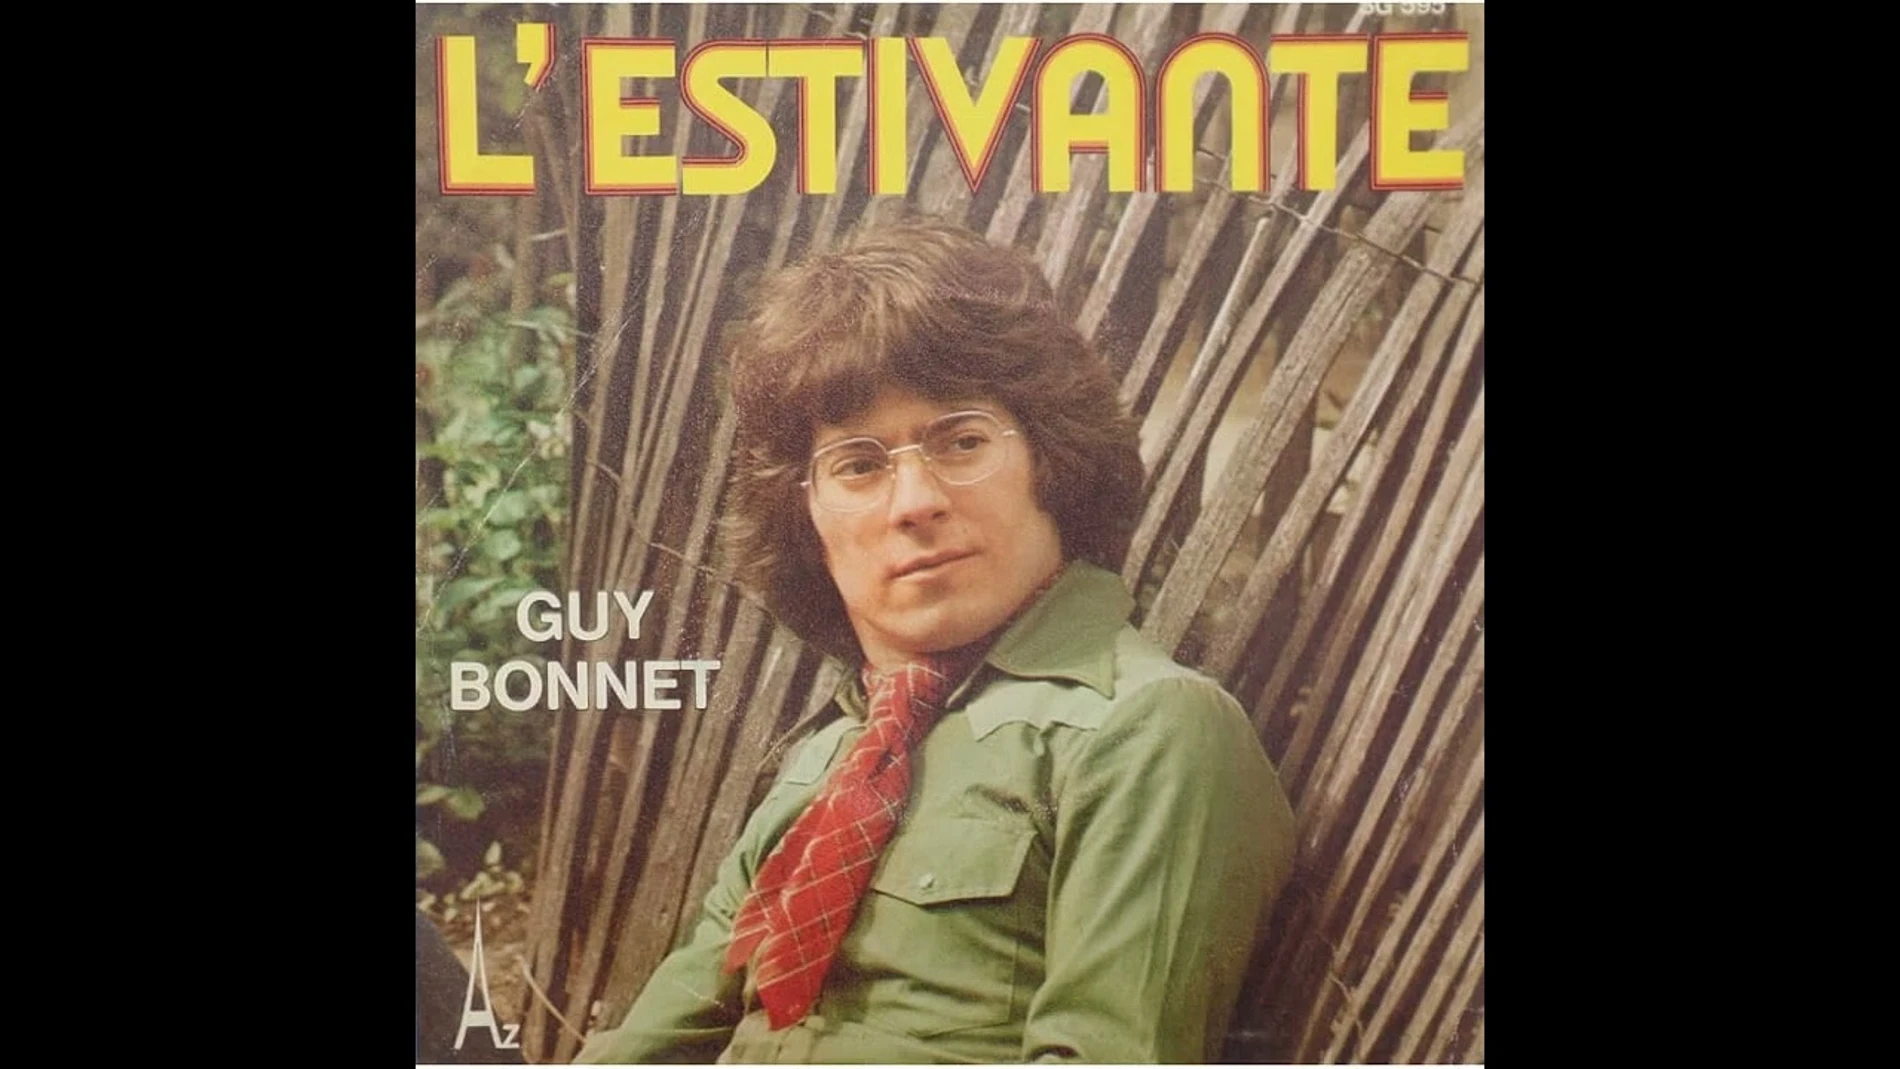 Guy Bonnet, en una de las portadas de sus discos